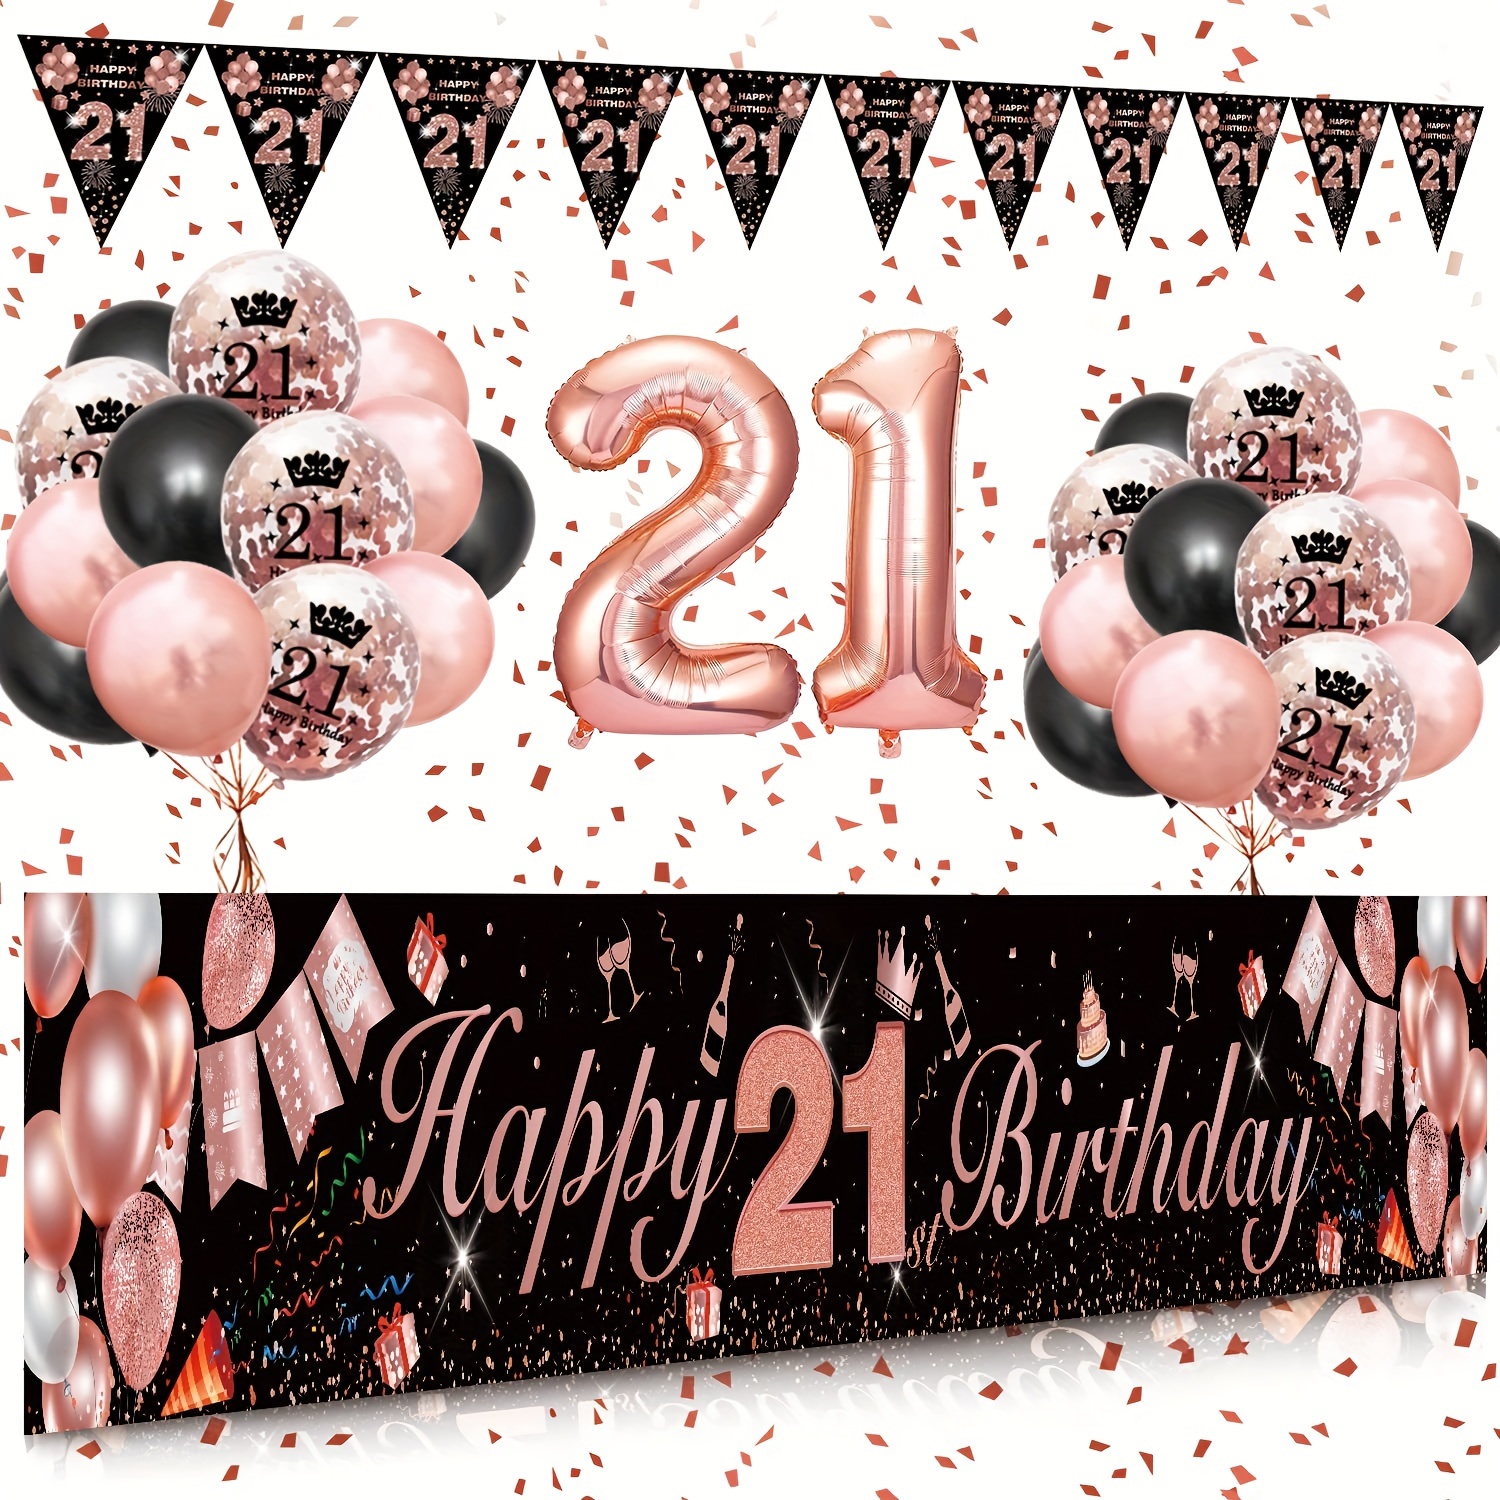  Cartel de 40 cumpleaños para puerta, decoraciones de feliz cumpleaños  40 para mujer, color morado y dorado, accesorios para fotos de cumpleaños  de 40 años, suministros de decoración de fiesta de : Electrónica